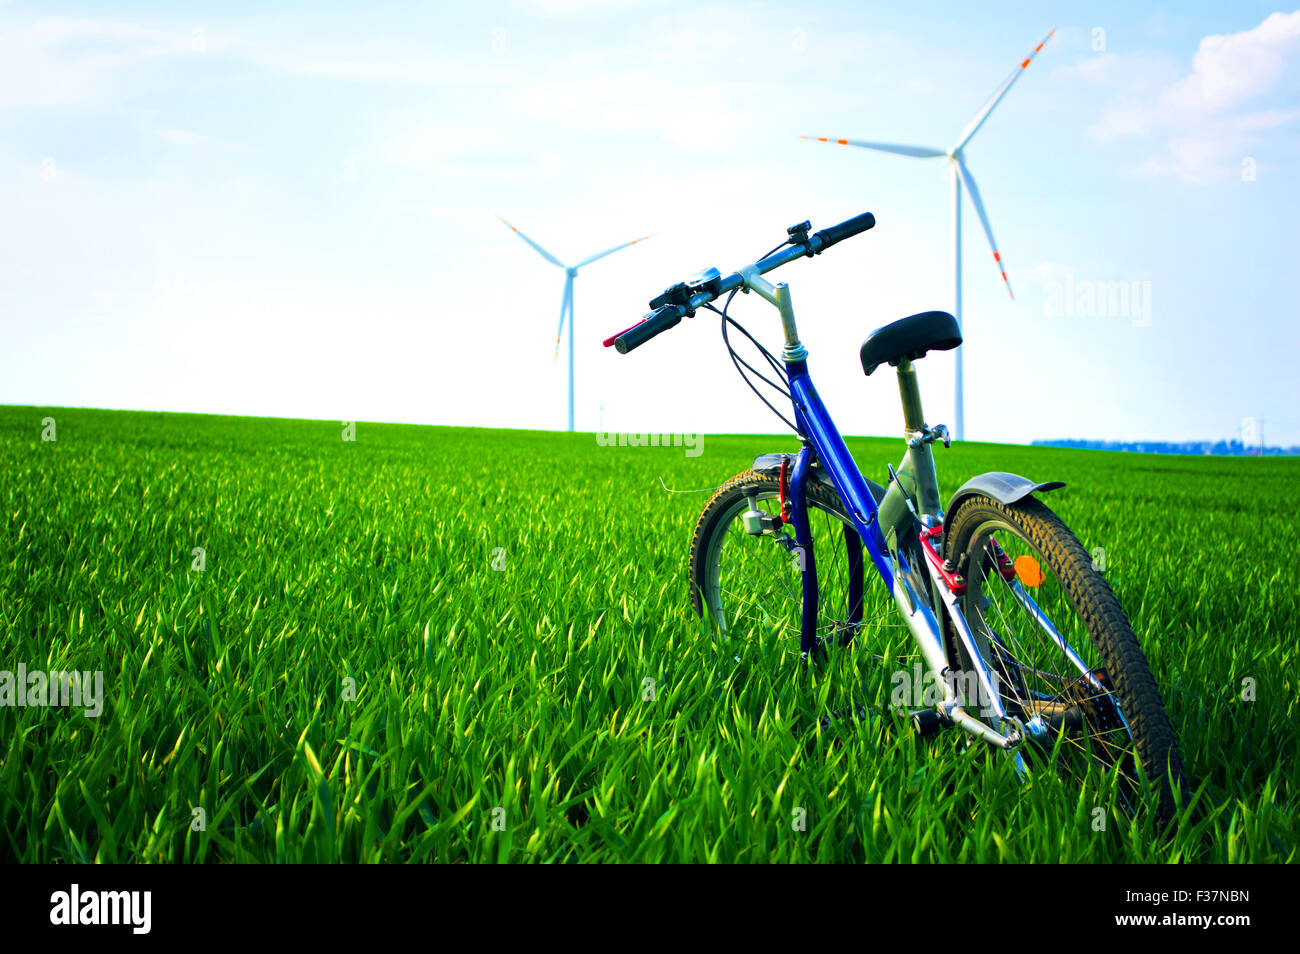 Sport und Natur im Sommer. Fahrrad auf der grünen Wiese mit Rasen im Sommer. Stockfoto